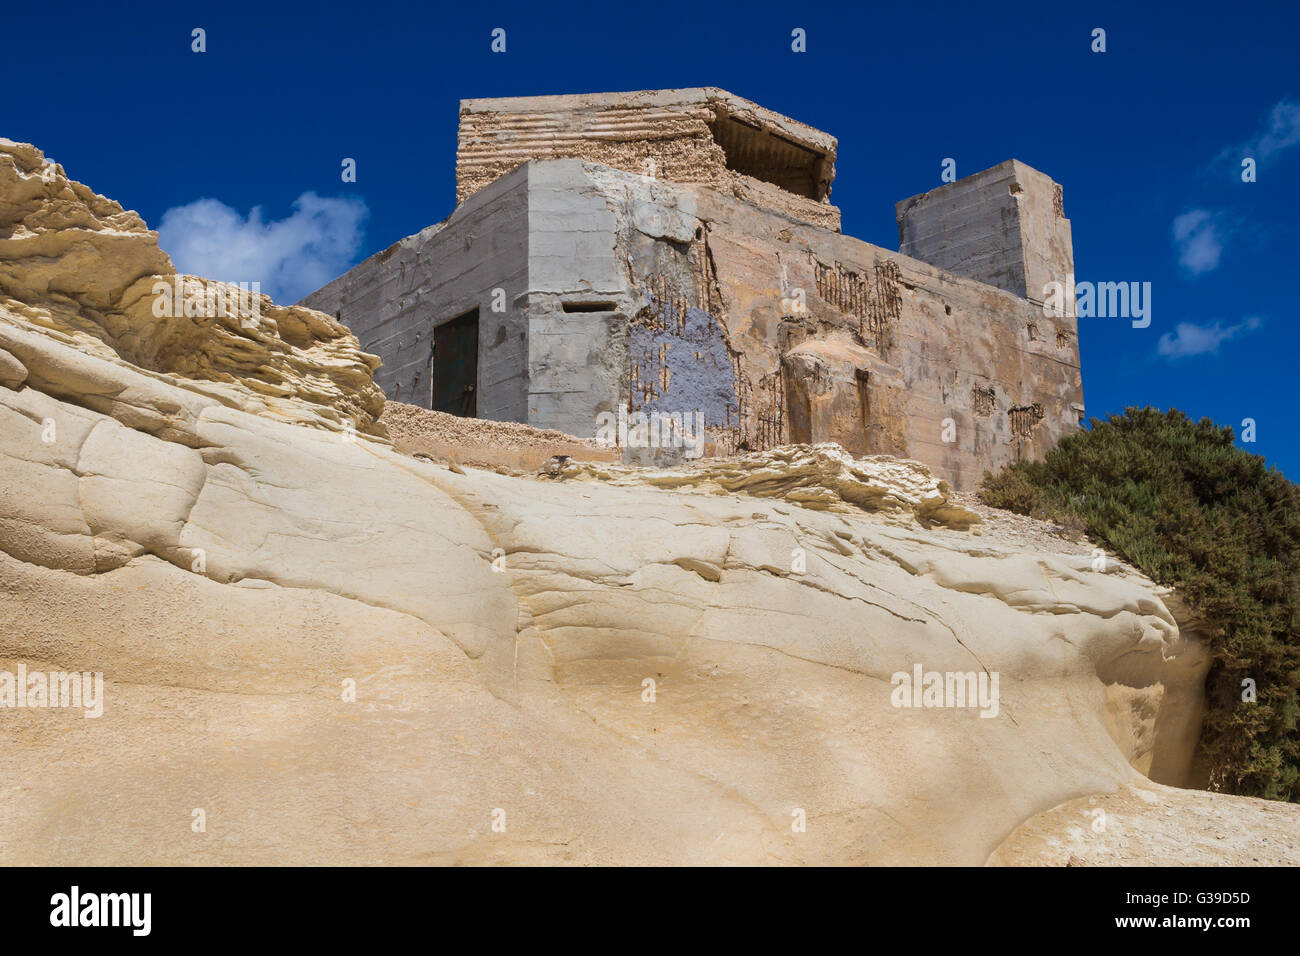 Sand Farbe der Felsen mit geschwungener Form und ein altes Gebäude. Küste der Insel Malta, Stadt Marsaskala. Blauer Himmel mit einigen whi Stockfoto